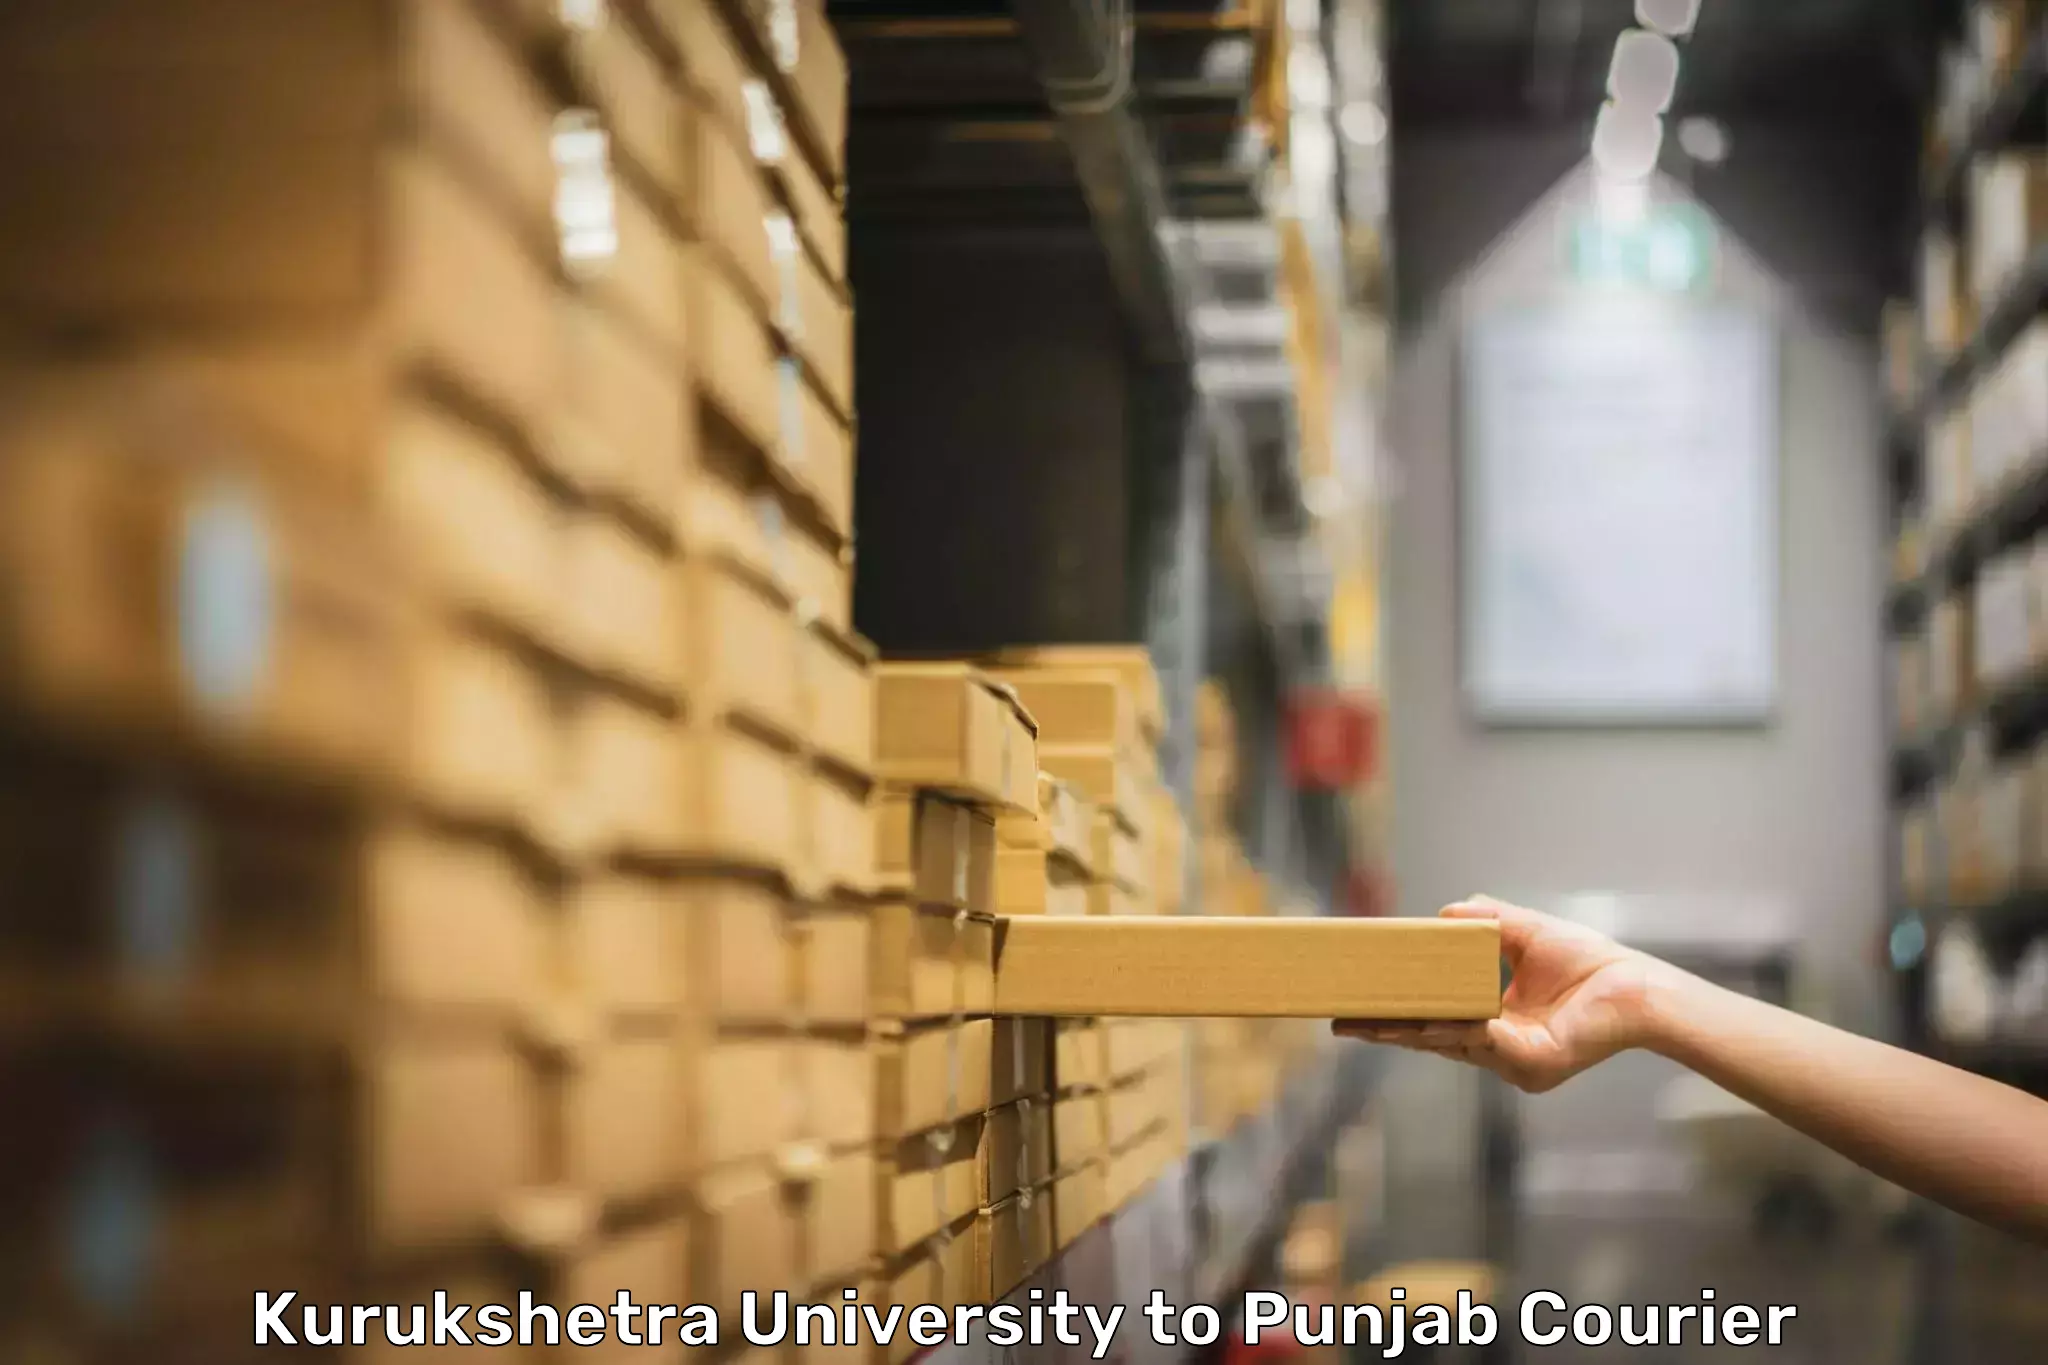 Personal baggage courier in Kurukshetra University to Punjab